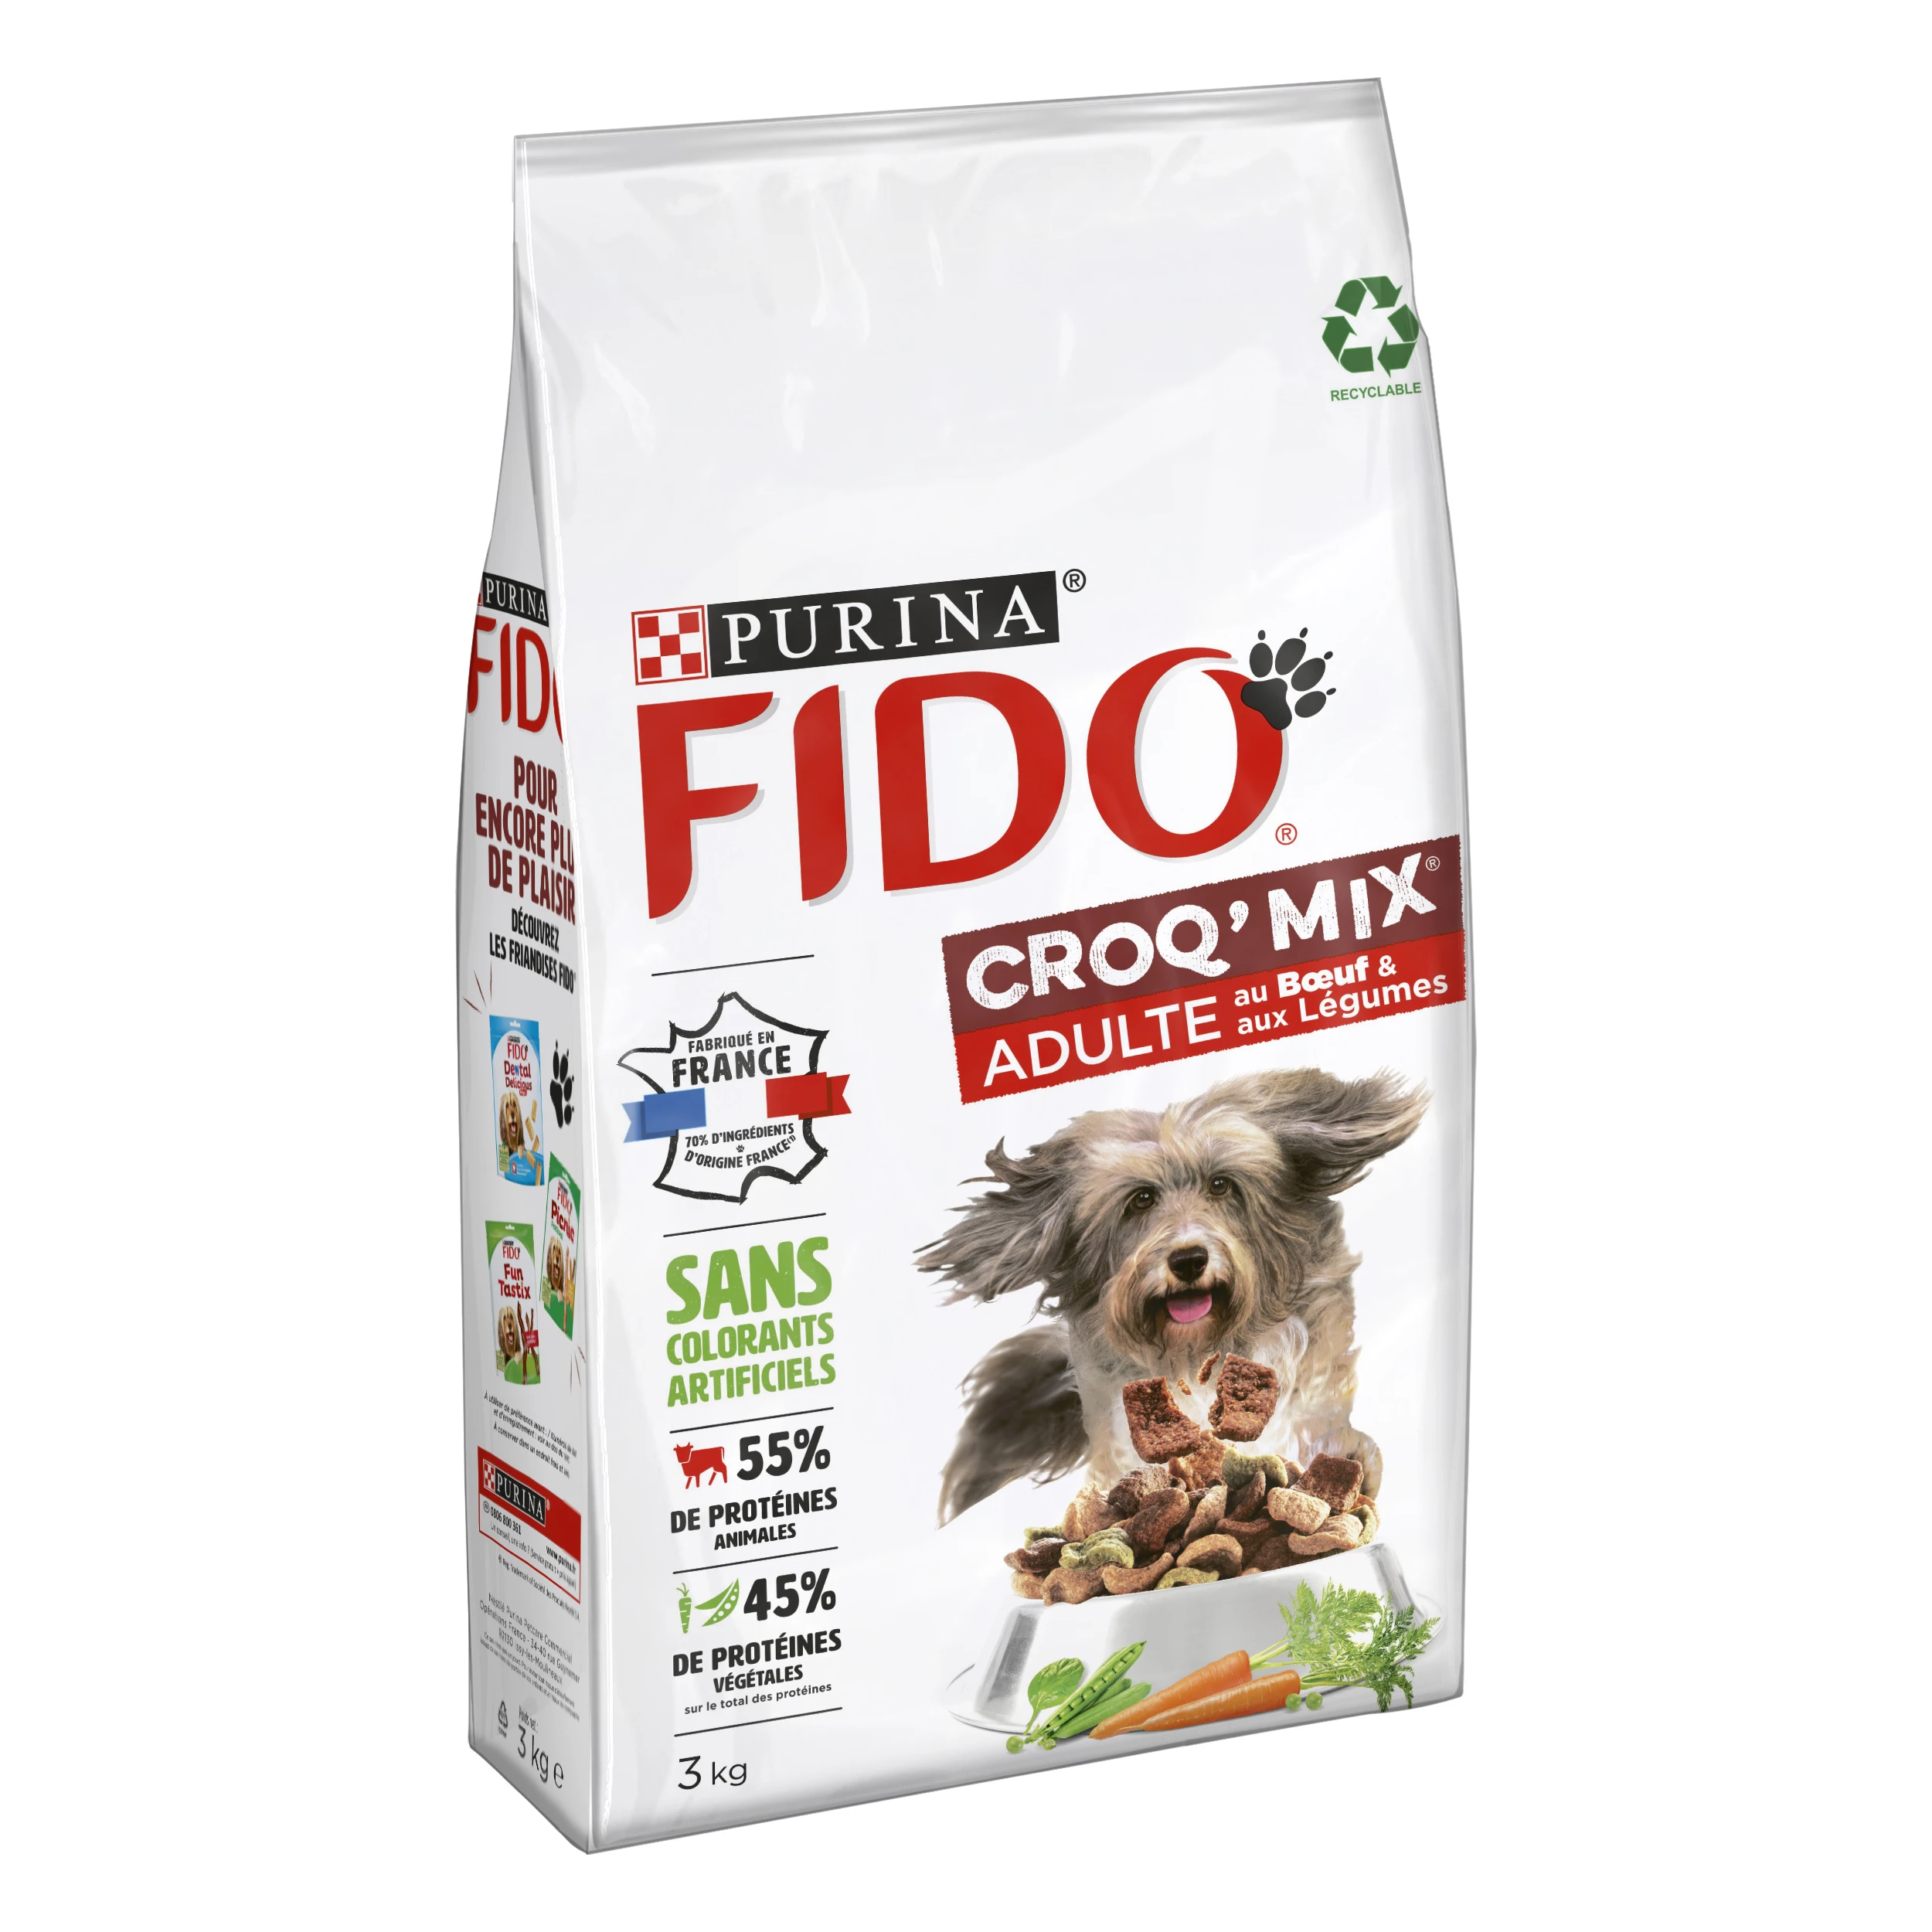 Croq' mix croquetas para perros adultos con ternera y verduras 3kg - PURINA FIDO